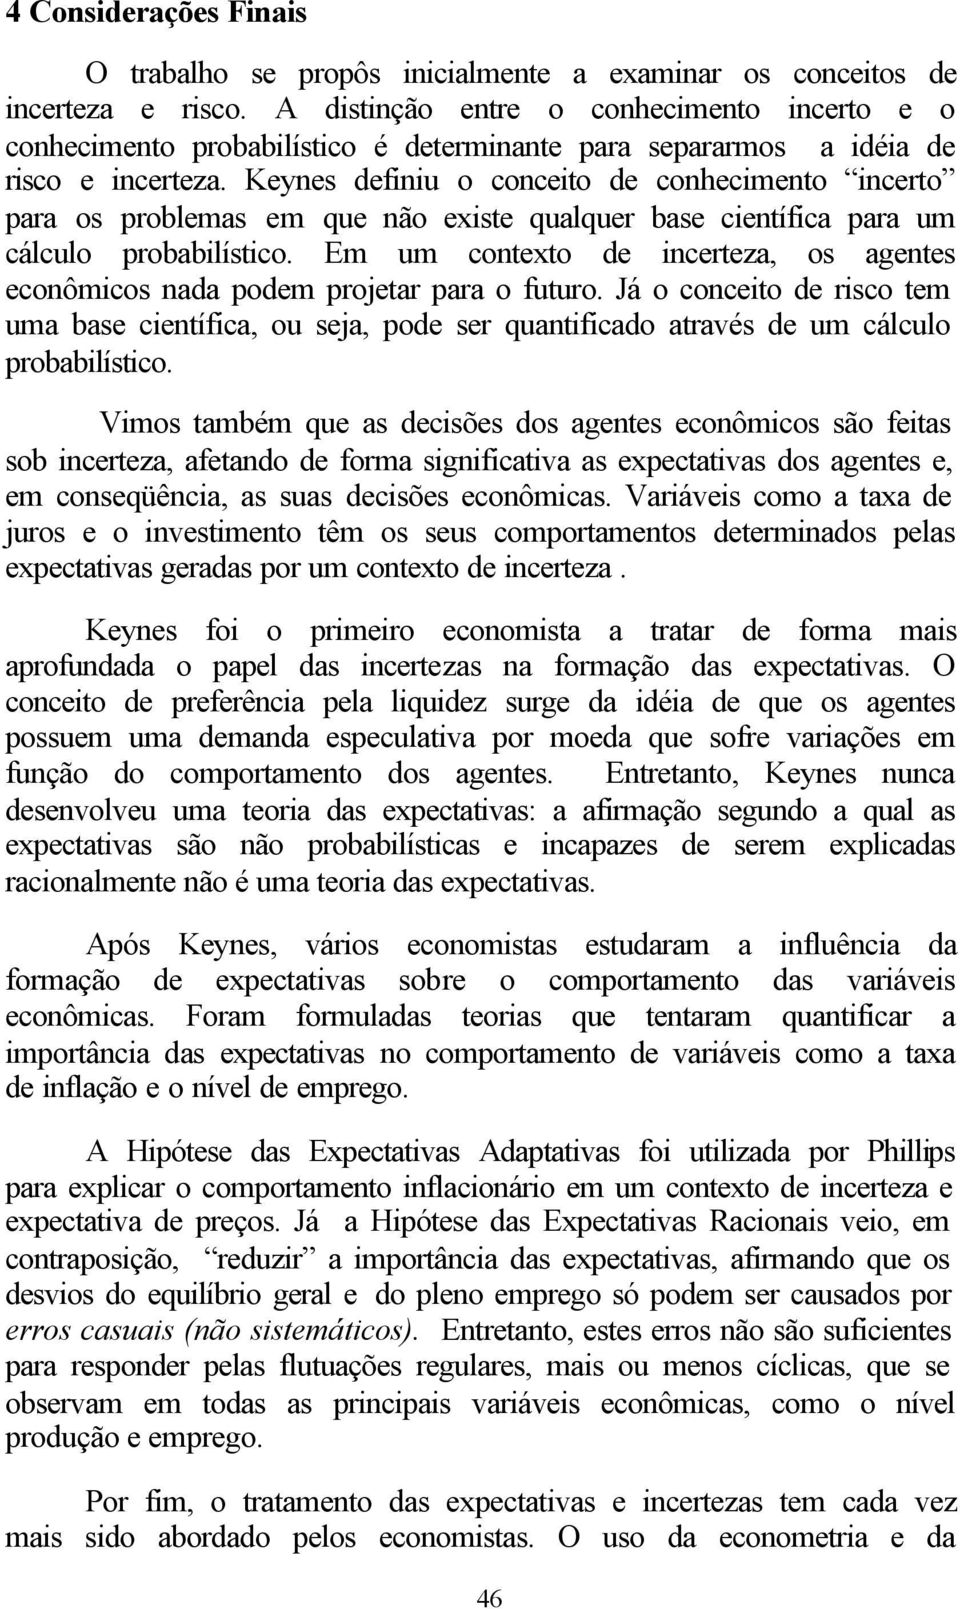 Keynes definiu o conceito de conhecimento incerto para os problemas em que não existe qualquer base científica para um cálculo probabilístico.